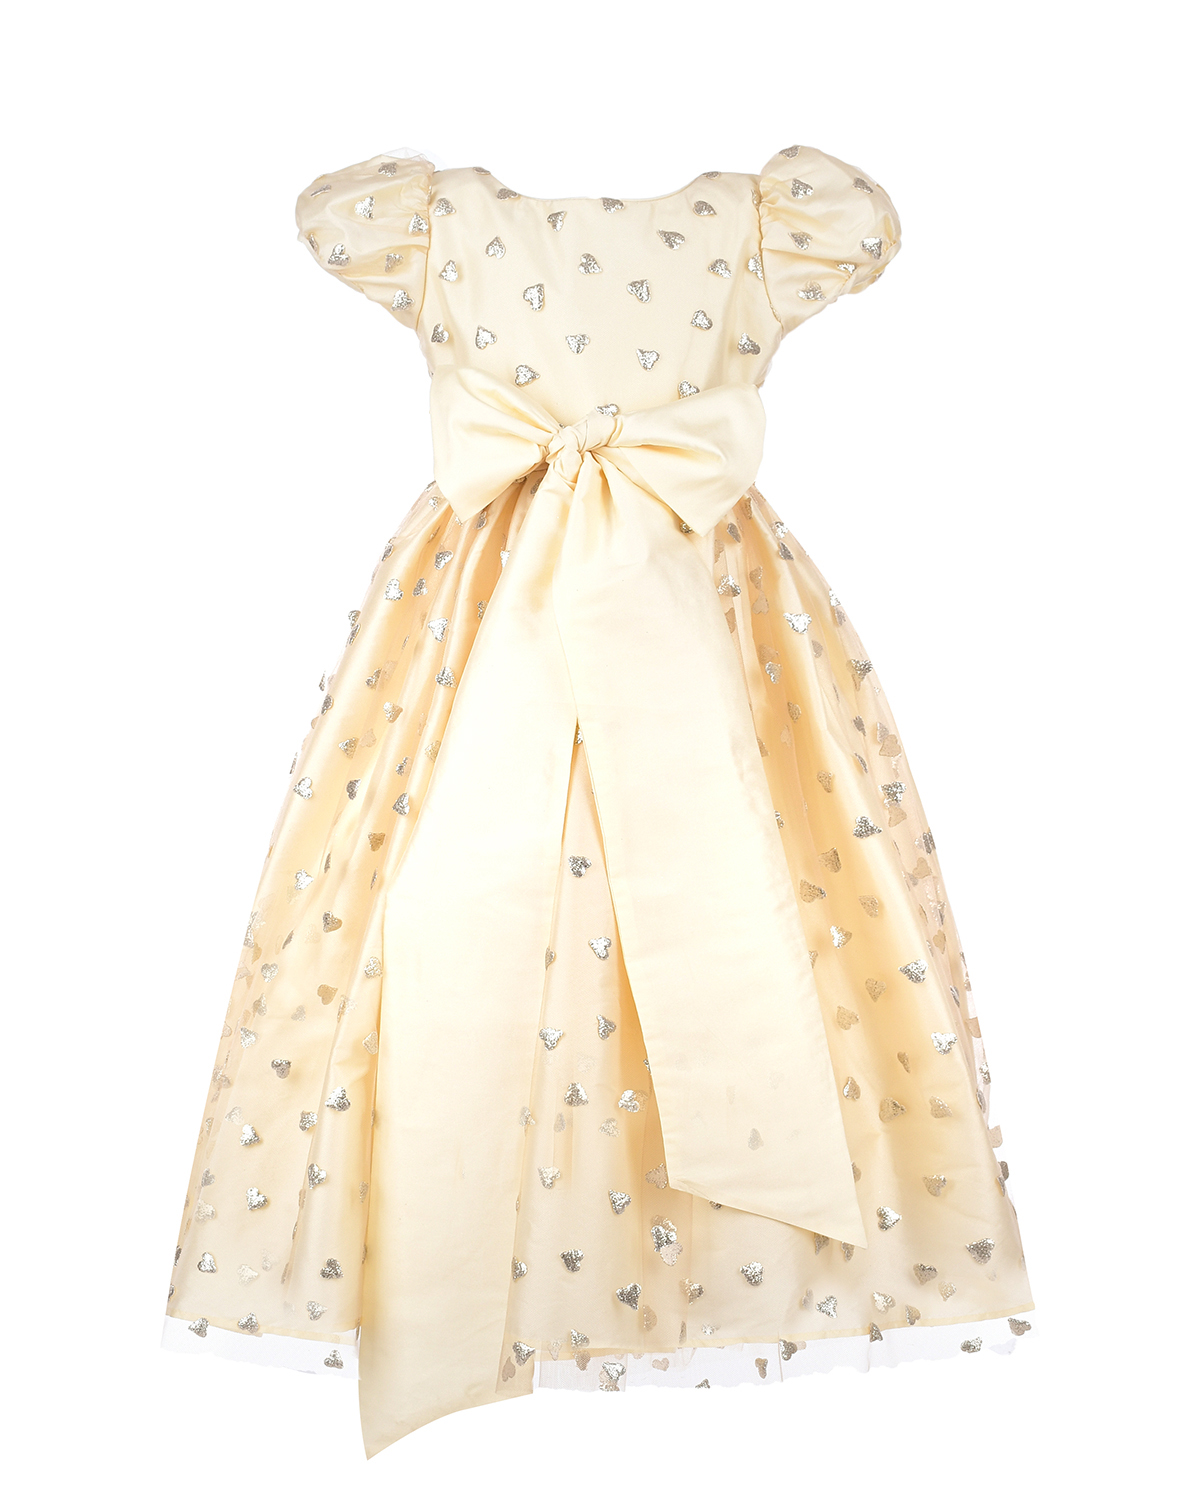 Шелковое платье кремового цвета с декором "сердца", размер 86 - фото 1